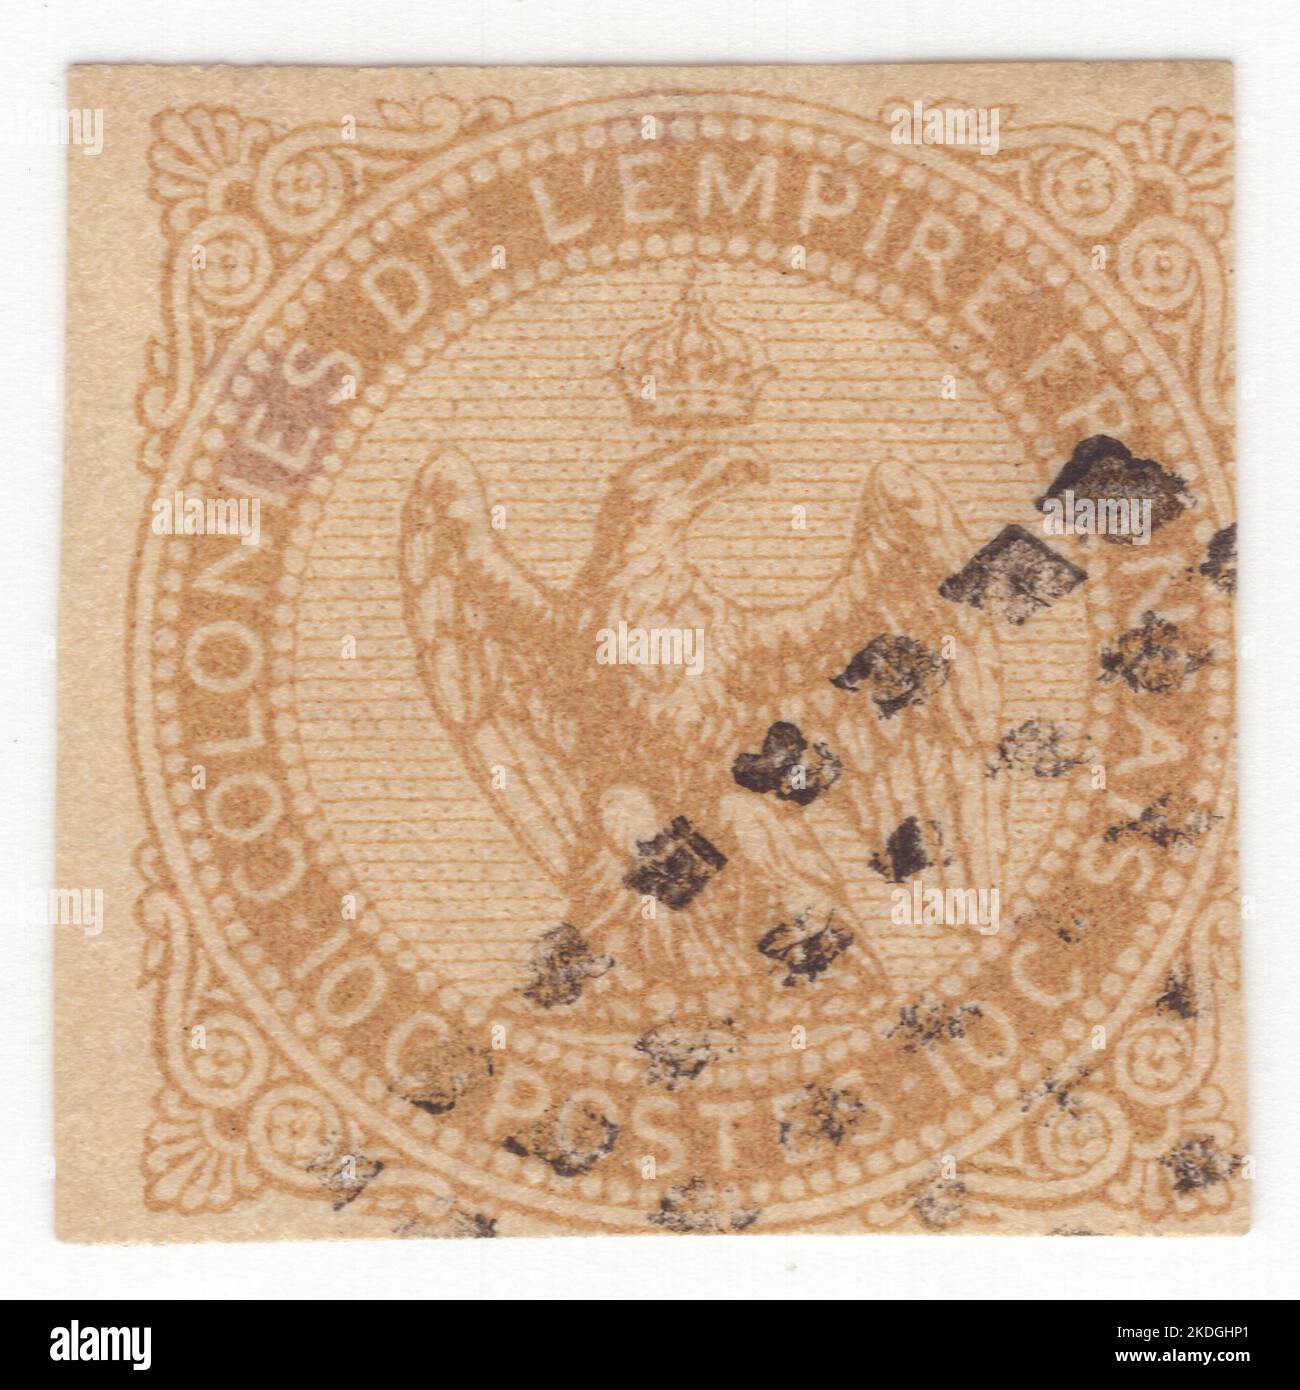 FRANZÖSISCHE KOLONIEN - 1859: Ein 10 Centimes bister auf gelber Briefmarke, der Adler mit einem Donnerschlag und einer Krone zeigt, Hauptelemente des Wappens des Zweiten Französischen Reiches von Napoleon III Stockfoto